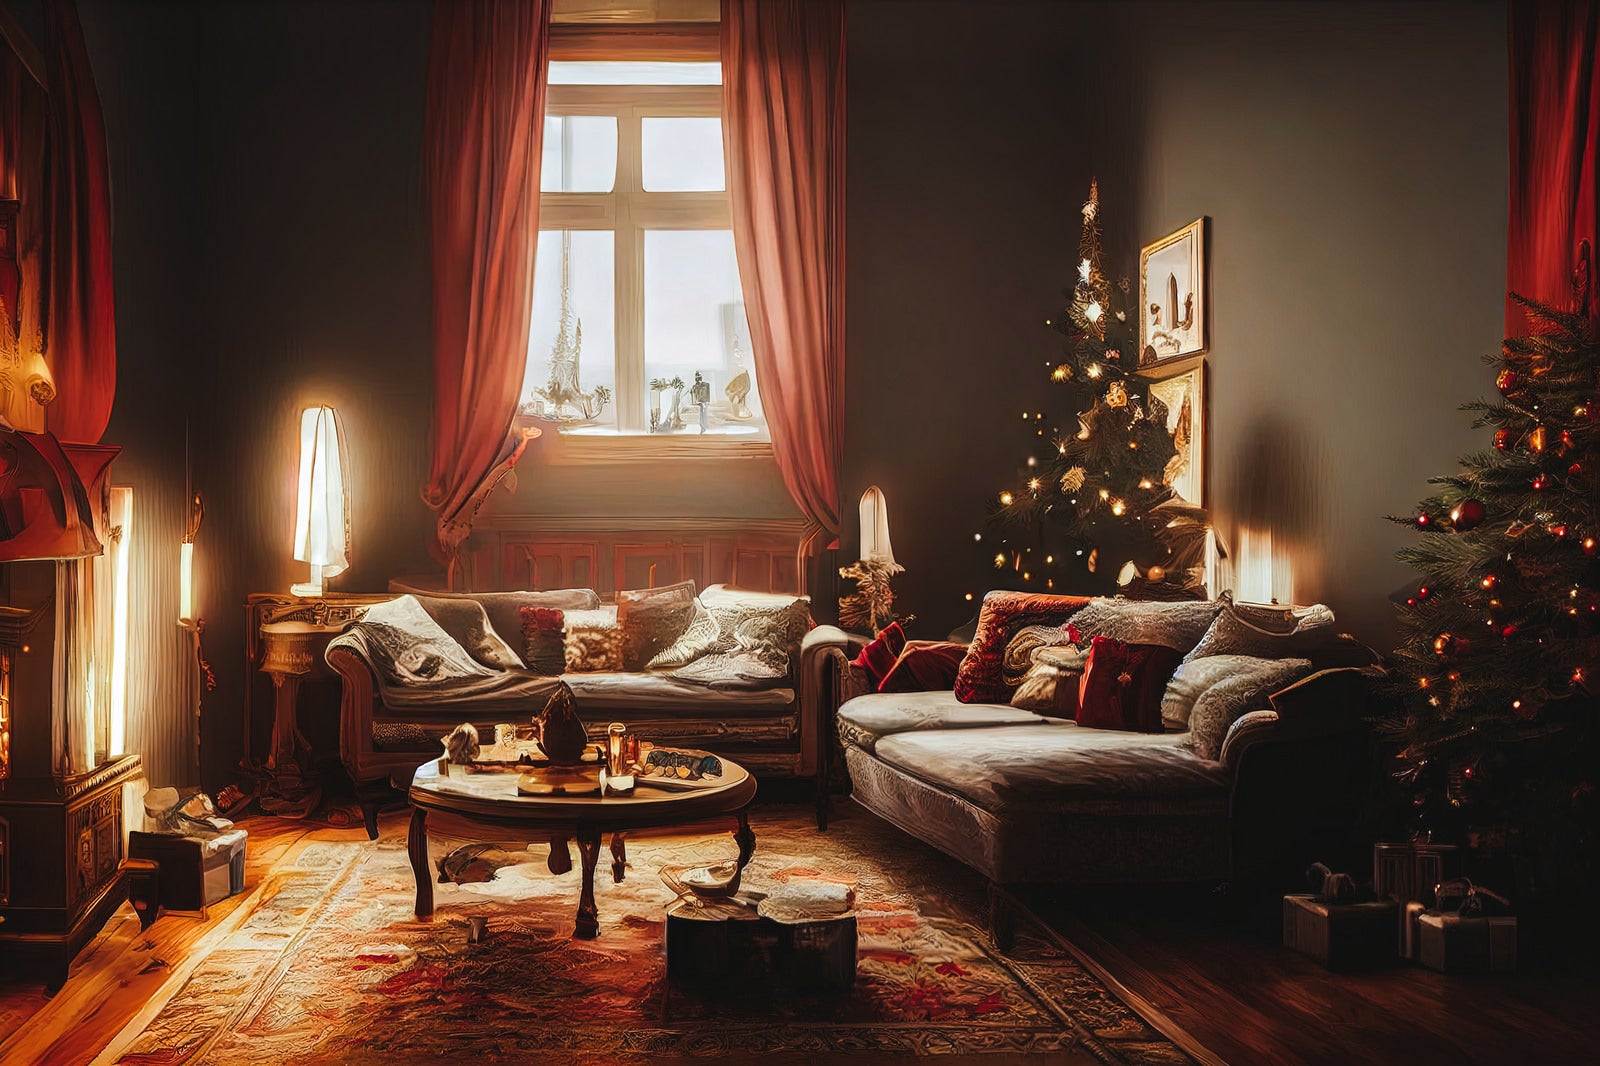 「窓から差し込む光とクリスマス色のリビング」の写真